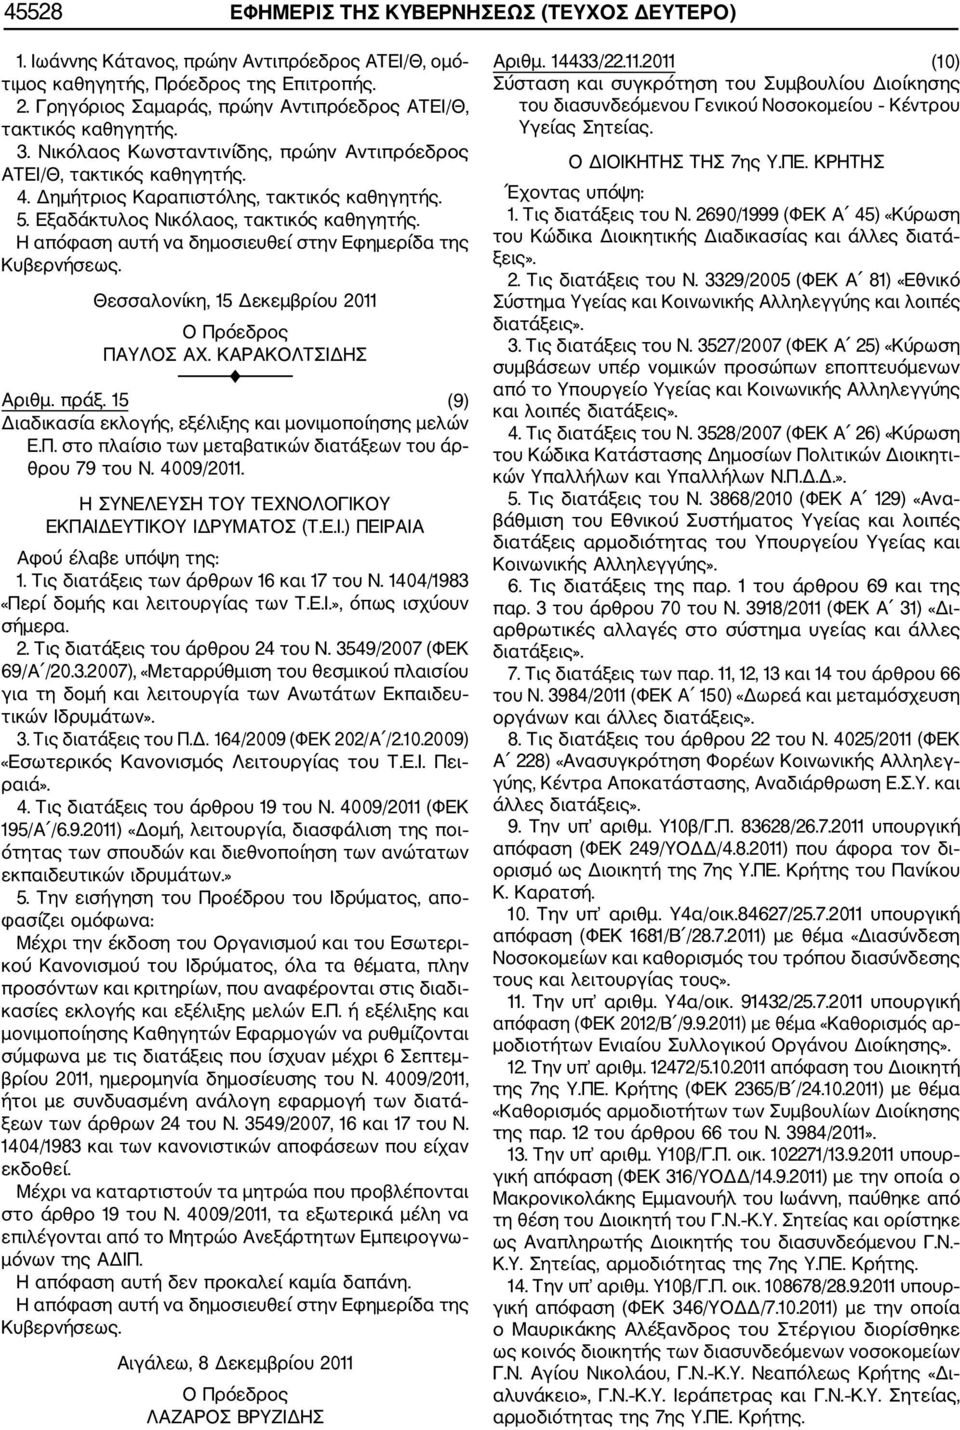 Εξαδάκτυλος Νικόλαος, τακτικός καθηγητής. Θεσσαλονίκη, 15 Δεκεμβρίου 2011 Ο Πρόεδρος ΠΑΥΛΟΣ ΑΧ. ΚΑΡΑΚΟΛΤΣΙΔΗΣ Αριθμ. πράξ. 15 (9) Διαδικασία εκλογής, εξέλιξης και μονιμοποίησης μελών Ε.Π. στο πλαίσιο των μεταβατικών διατάξεων του άρ θρου 79 του Ν.